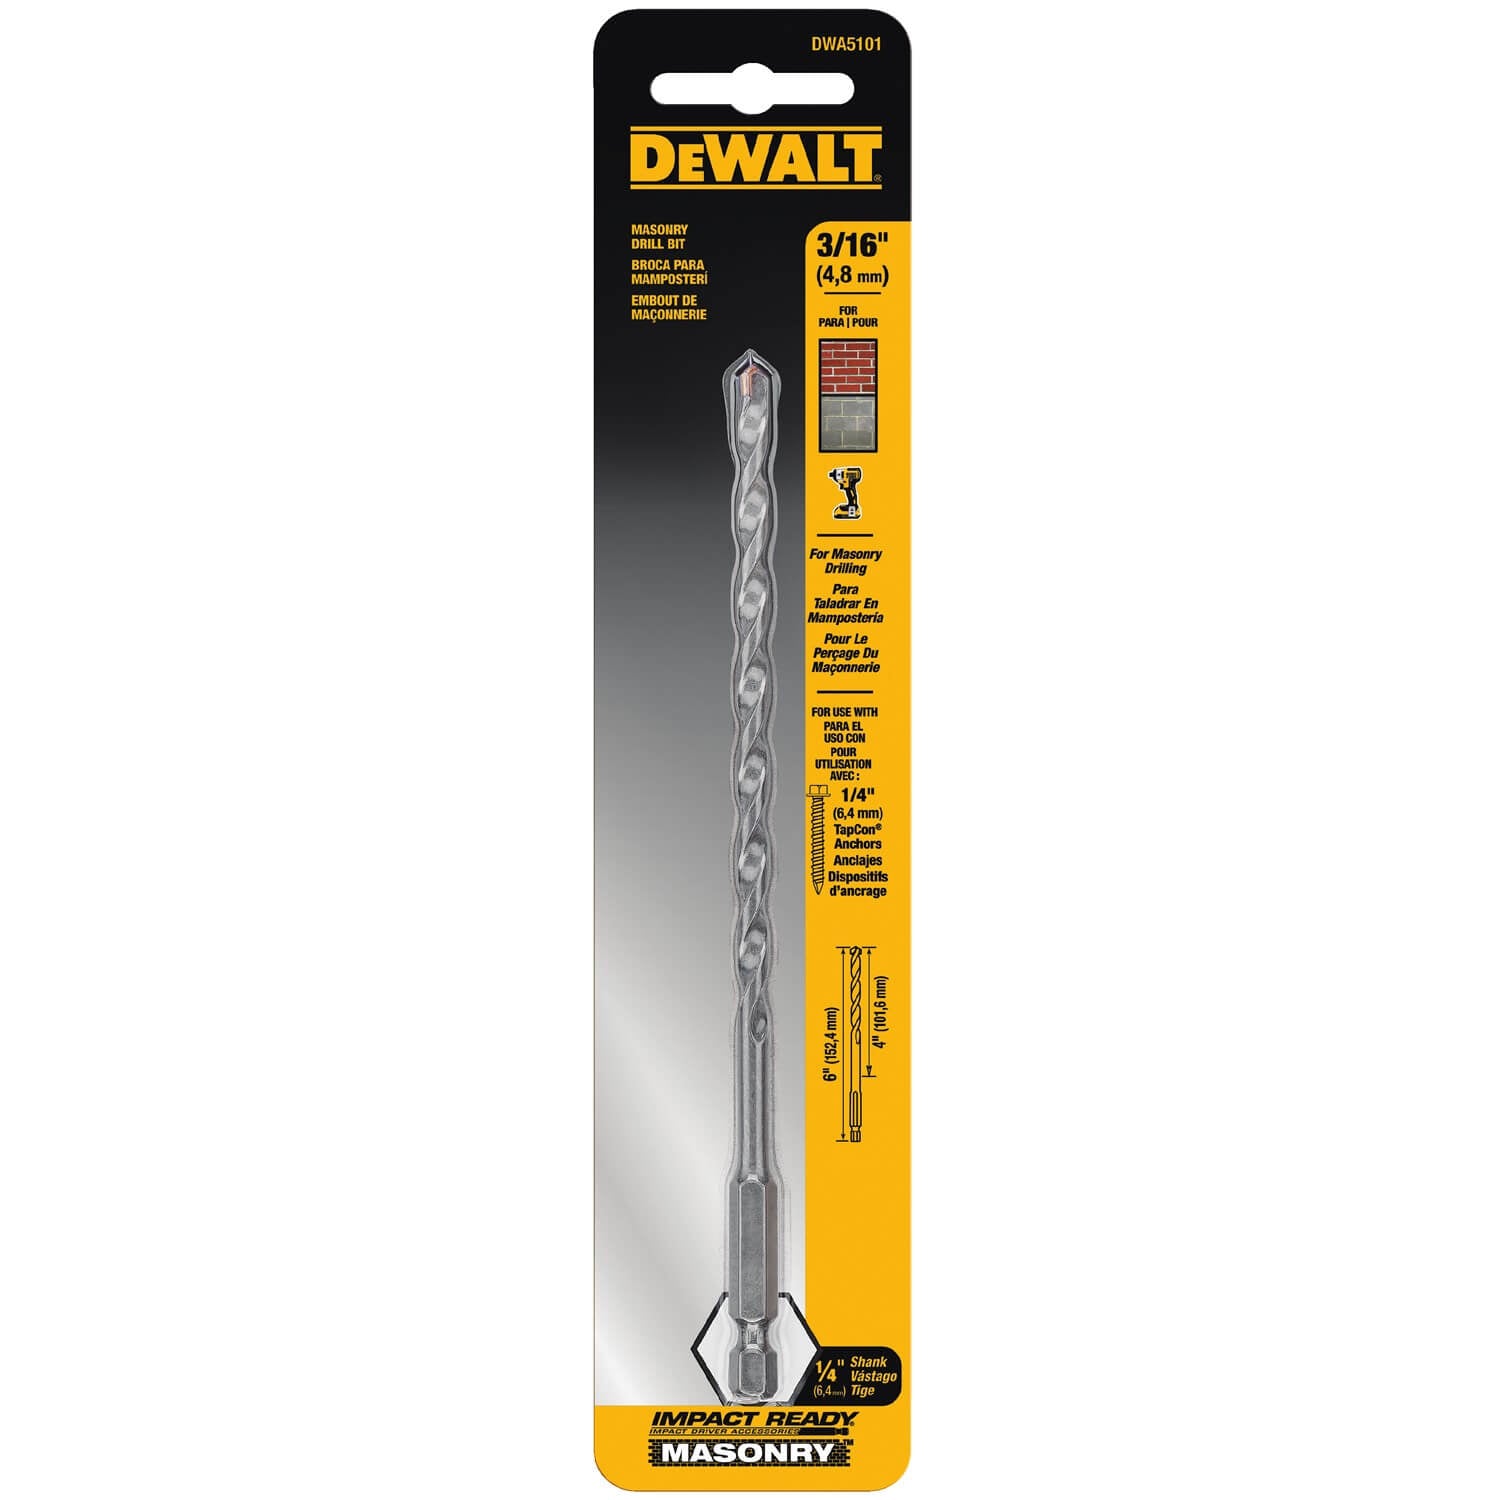 Dewalt DWA5101 - 3/16X4X6IN IMPACT RDY MASONRY BIT - wise-line-tools